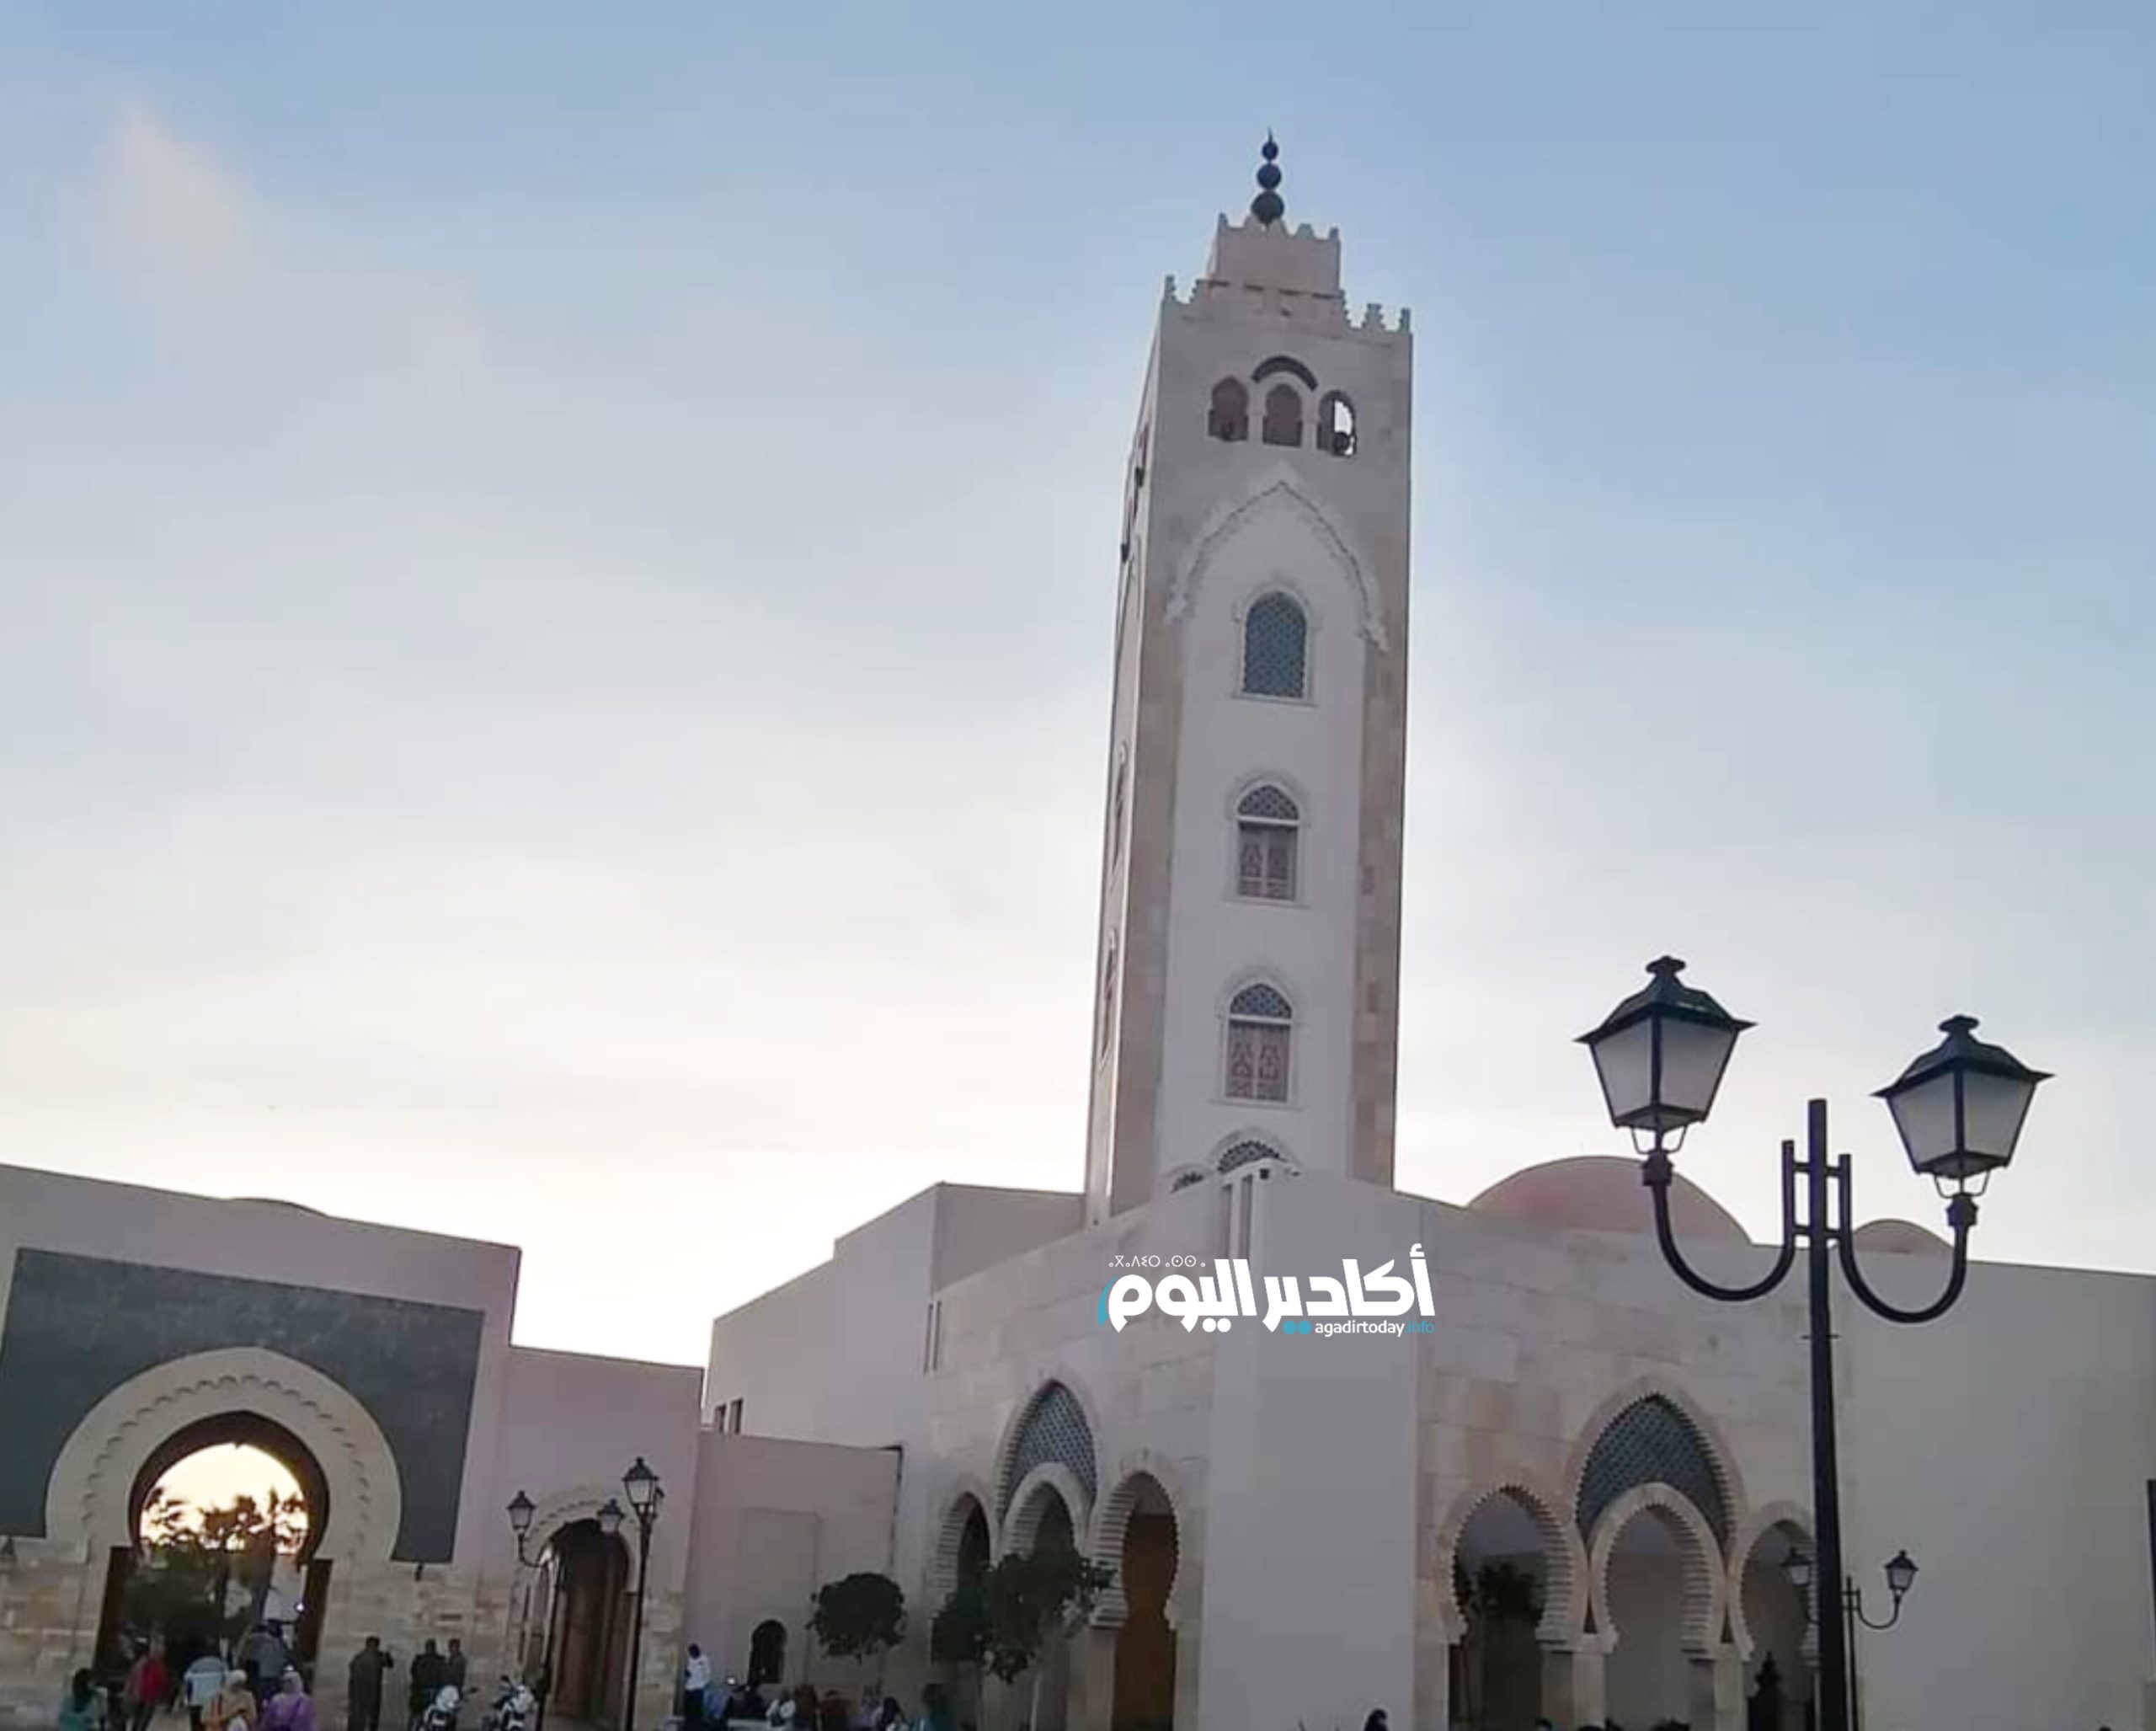 بمناسبة عيد الفطر...سوق الاحد يفتح ابوابه يوم الاثنين - AgadirToday